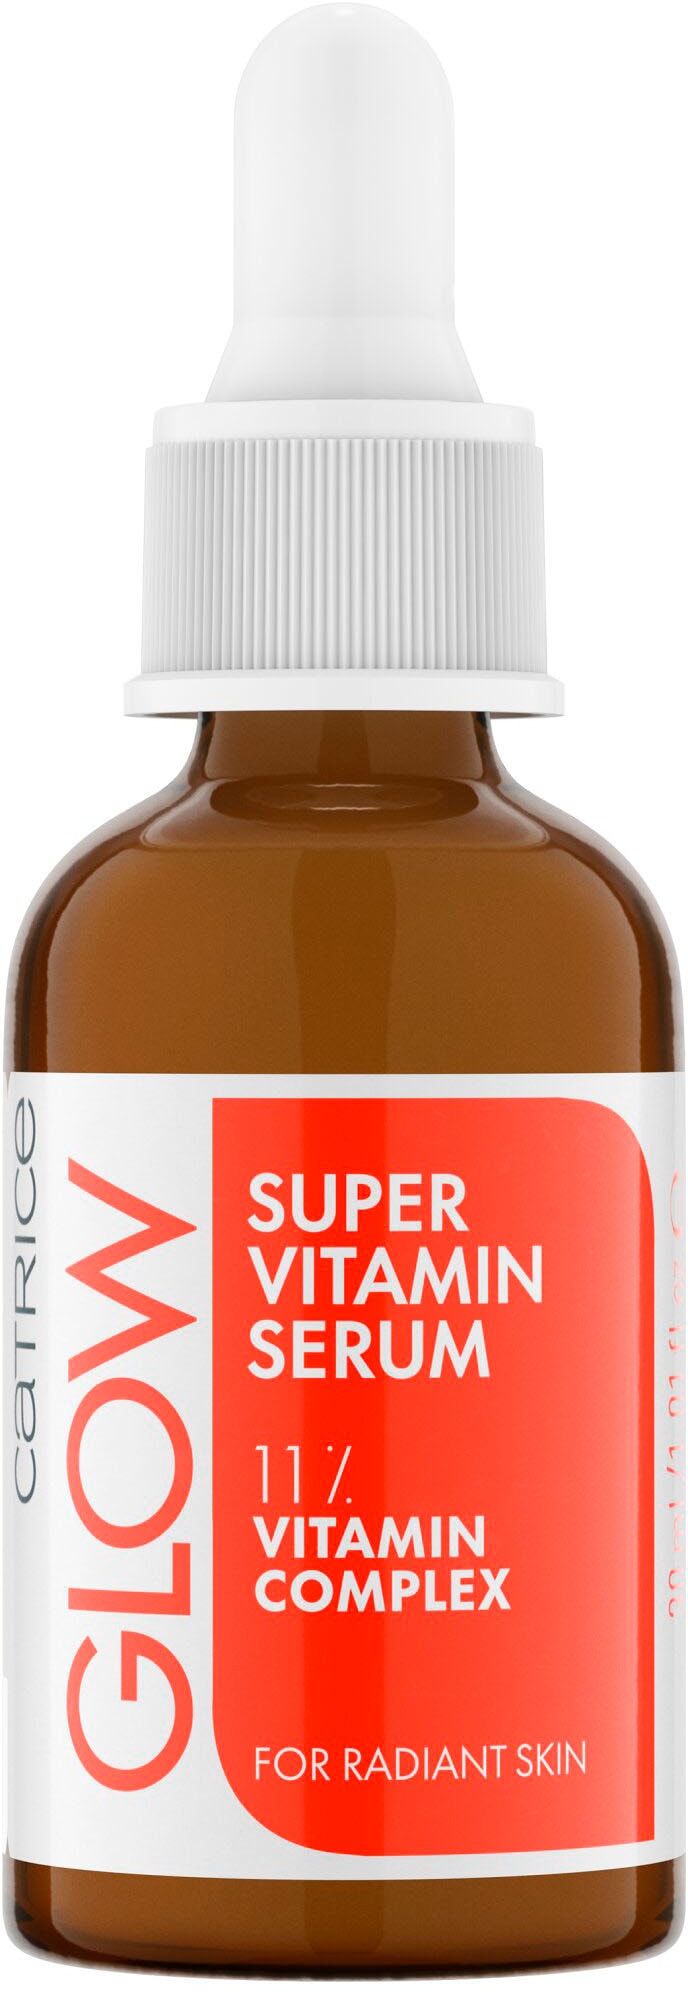 Catrice Gesichtsserum »Glow Super Vitamin online Serum« kaufen